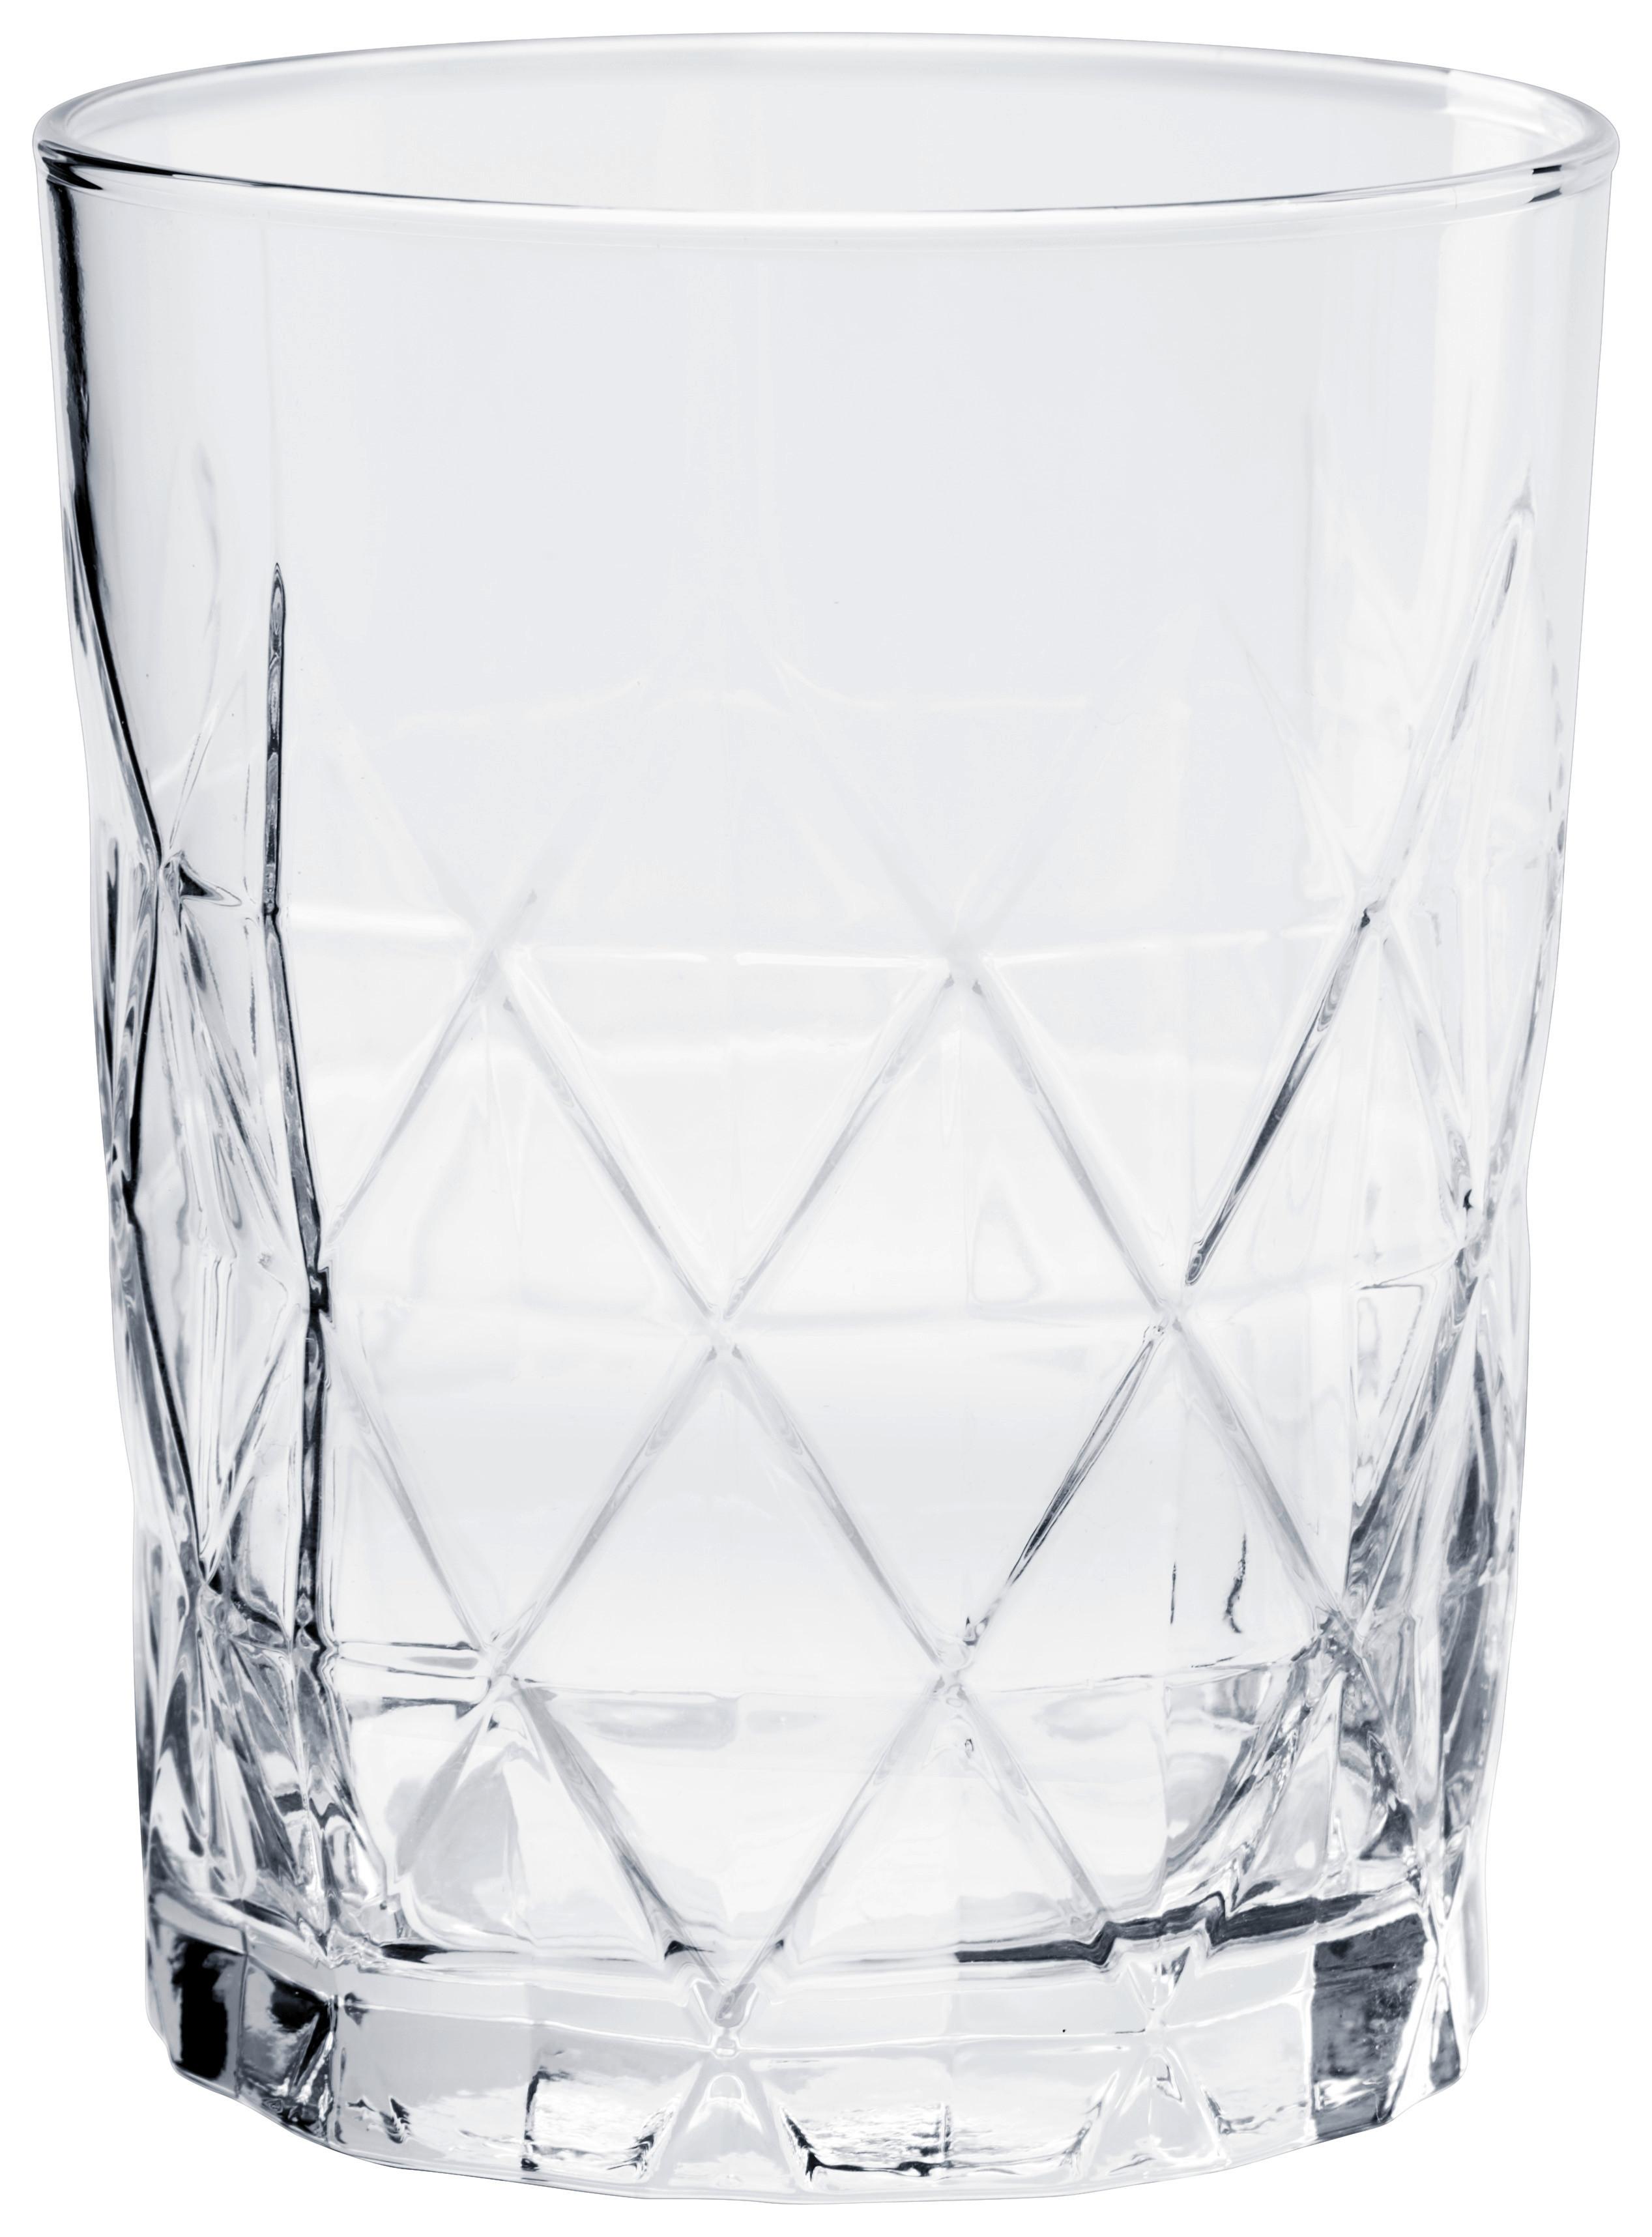 Pohár Na Whisky Skye, 345ml - číra, Konvenčný, sklo (8,3/10cm) - Modern Living